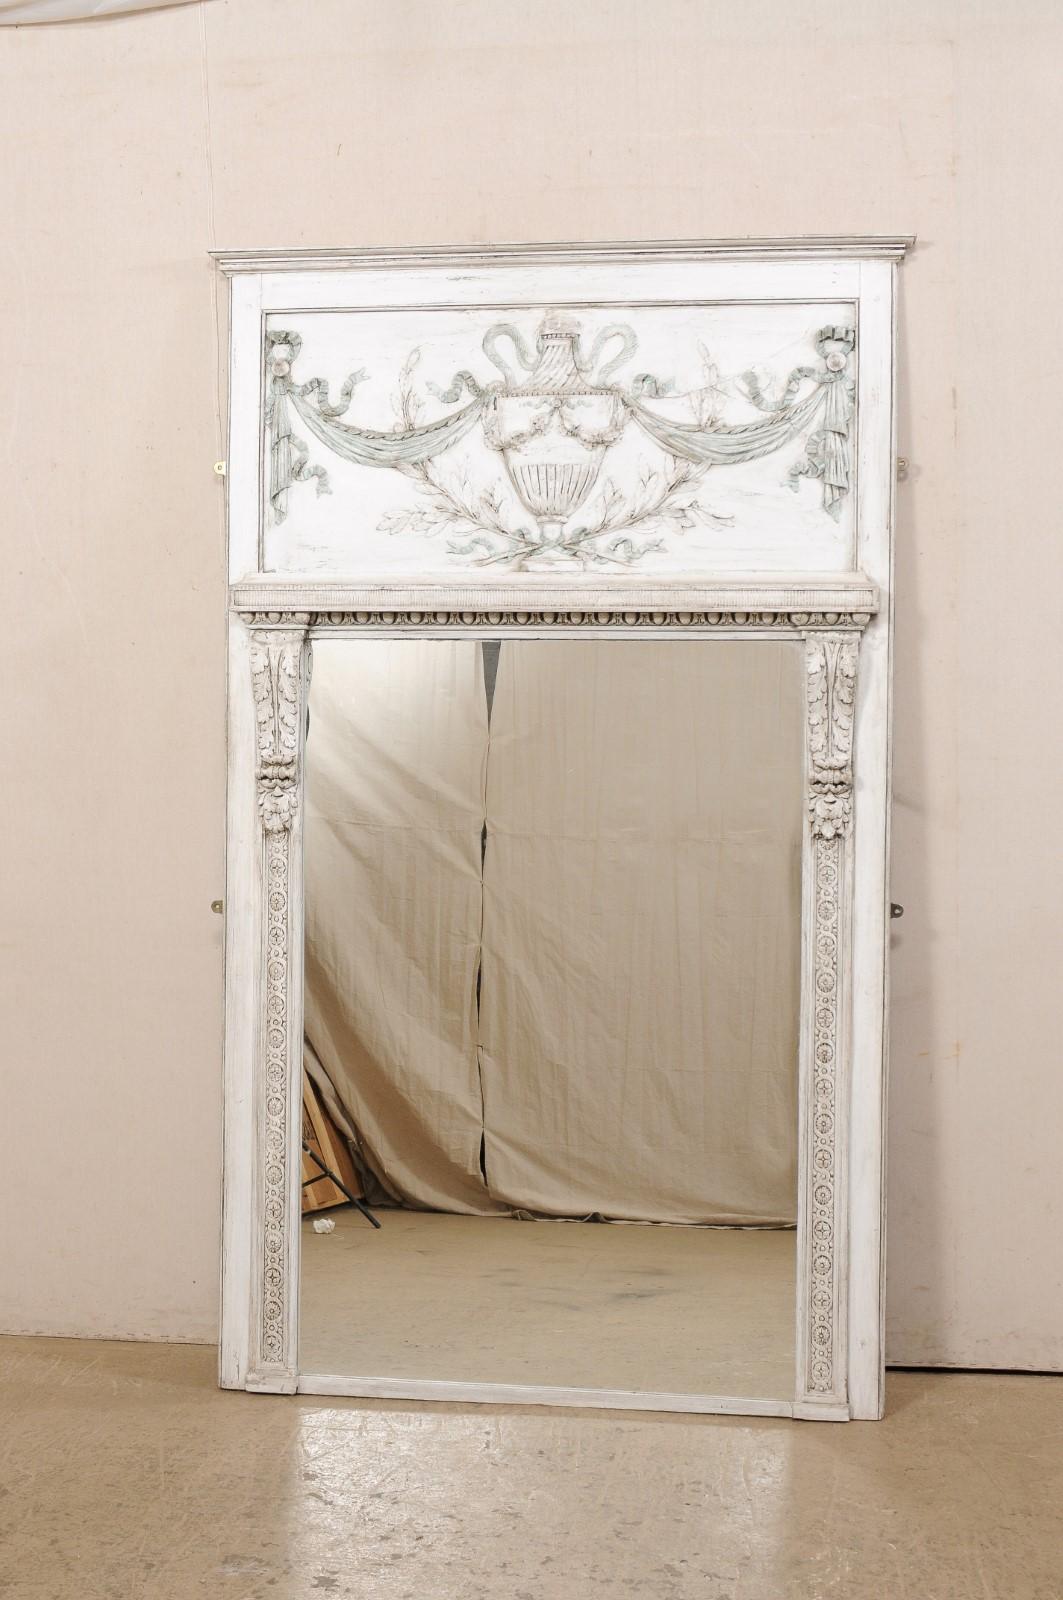 Miroir à trumeau en bois peint de style néoclassique français. Ce miroir vintage de France présente une plaque en bois sculpté, rappelant le design trumeau, avec une urne sculptée présentée en évidence et ornée de guirlandes drapées, de rubans en